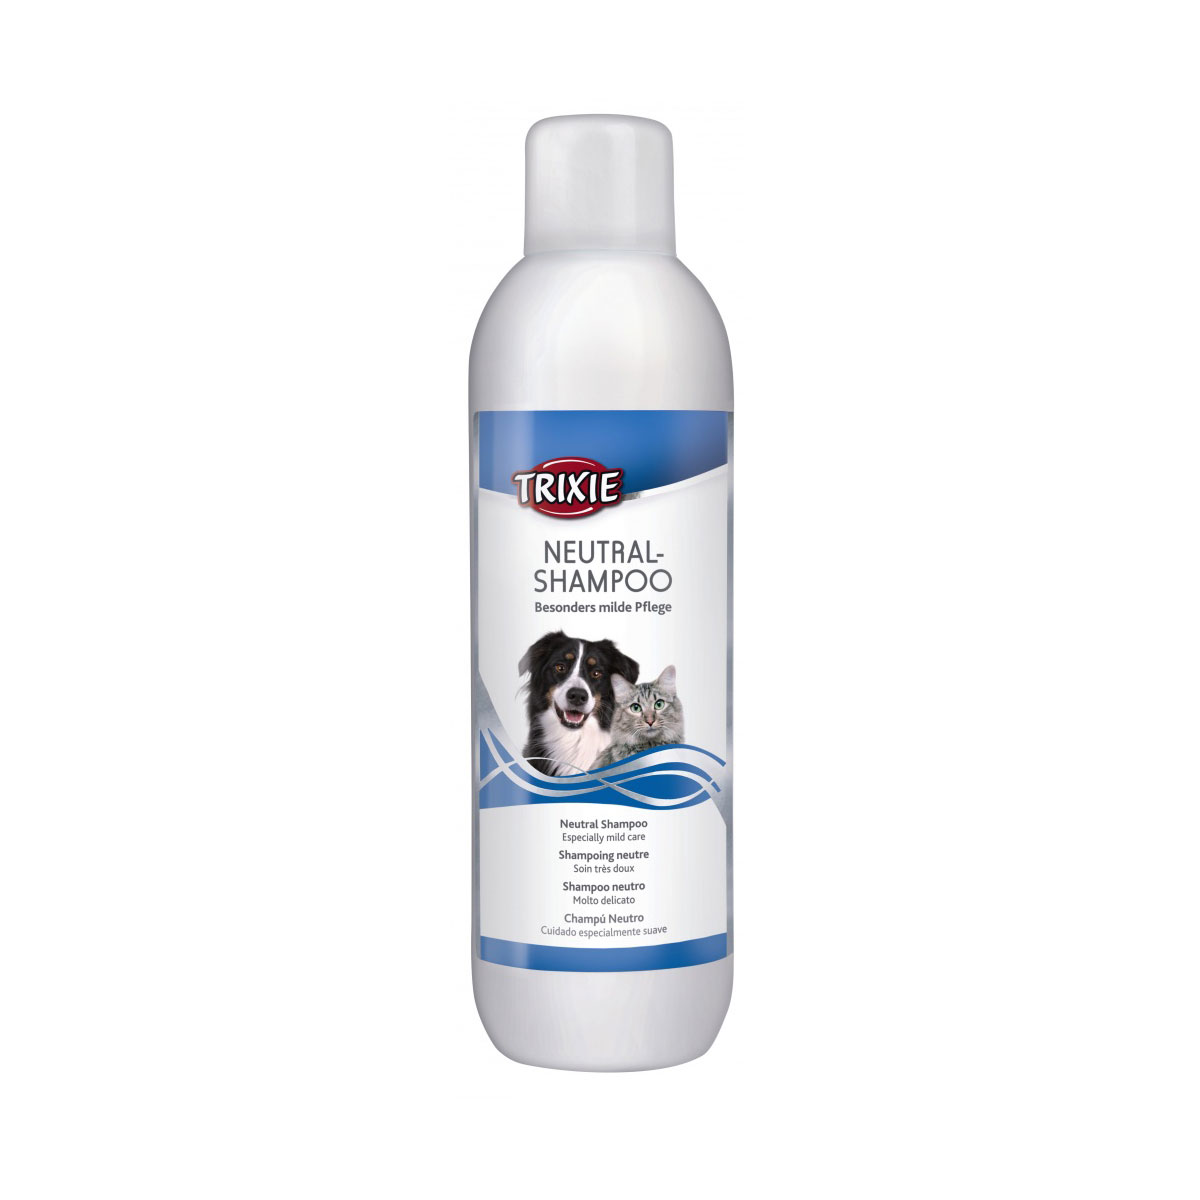 Trixie Neutral-Shampoo für Hunde und Katzen 1l